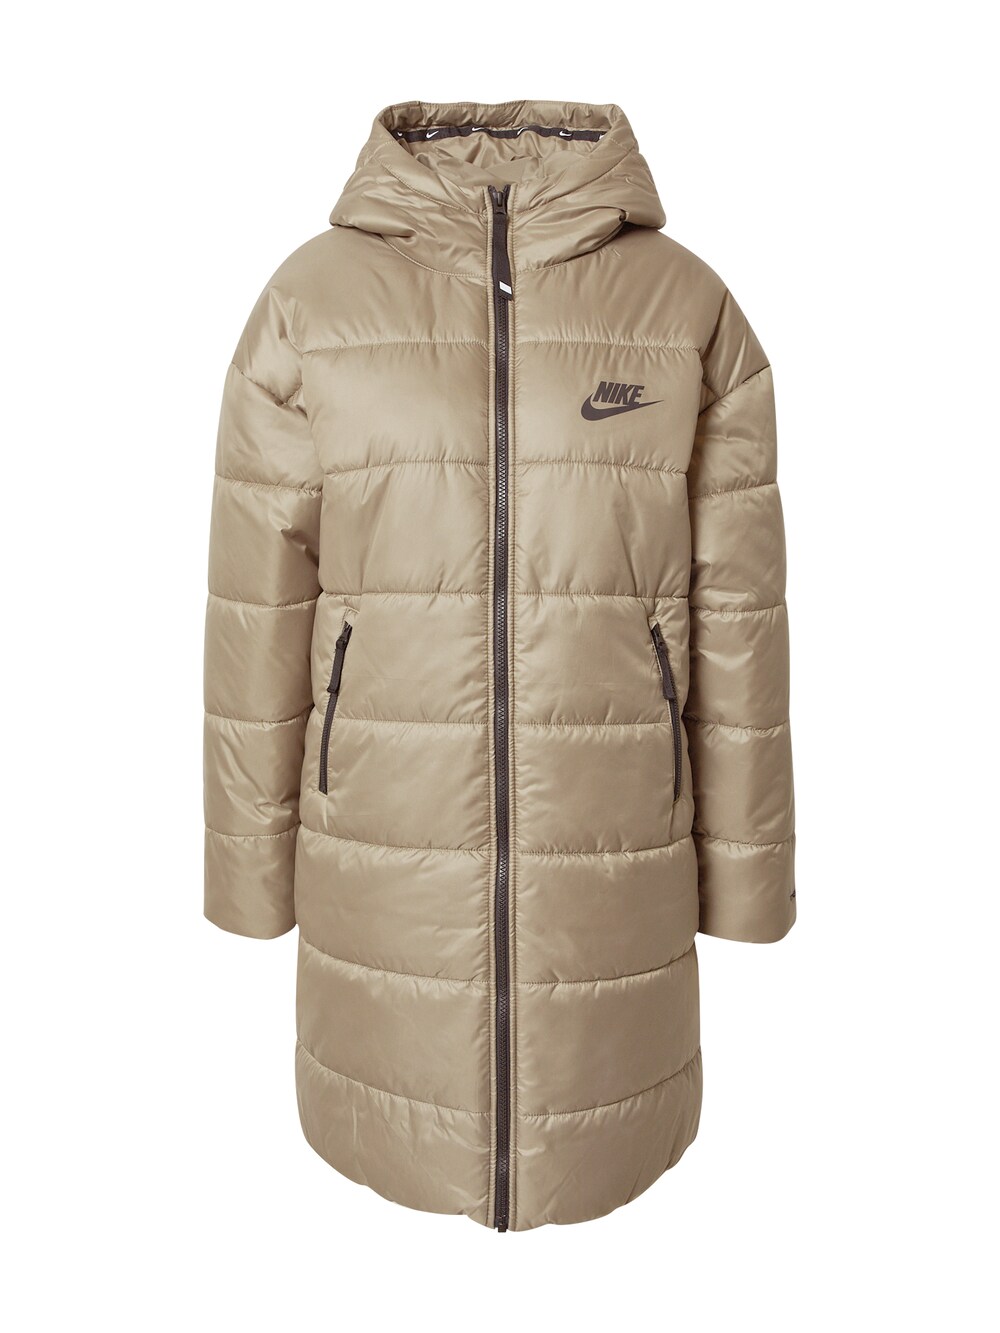 Зимнее пальто Nike, оливковый